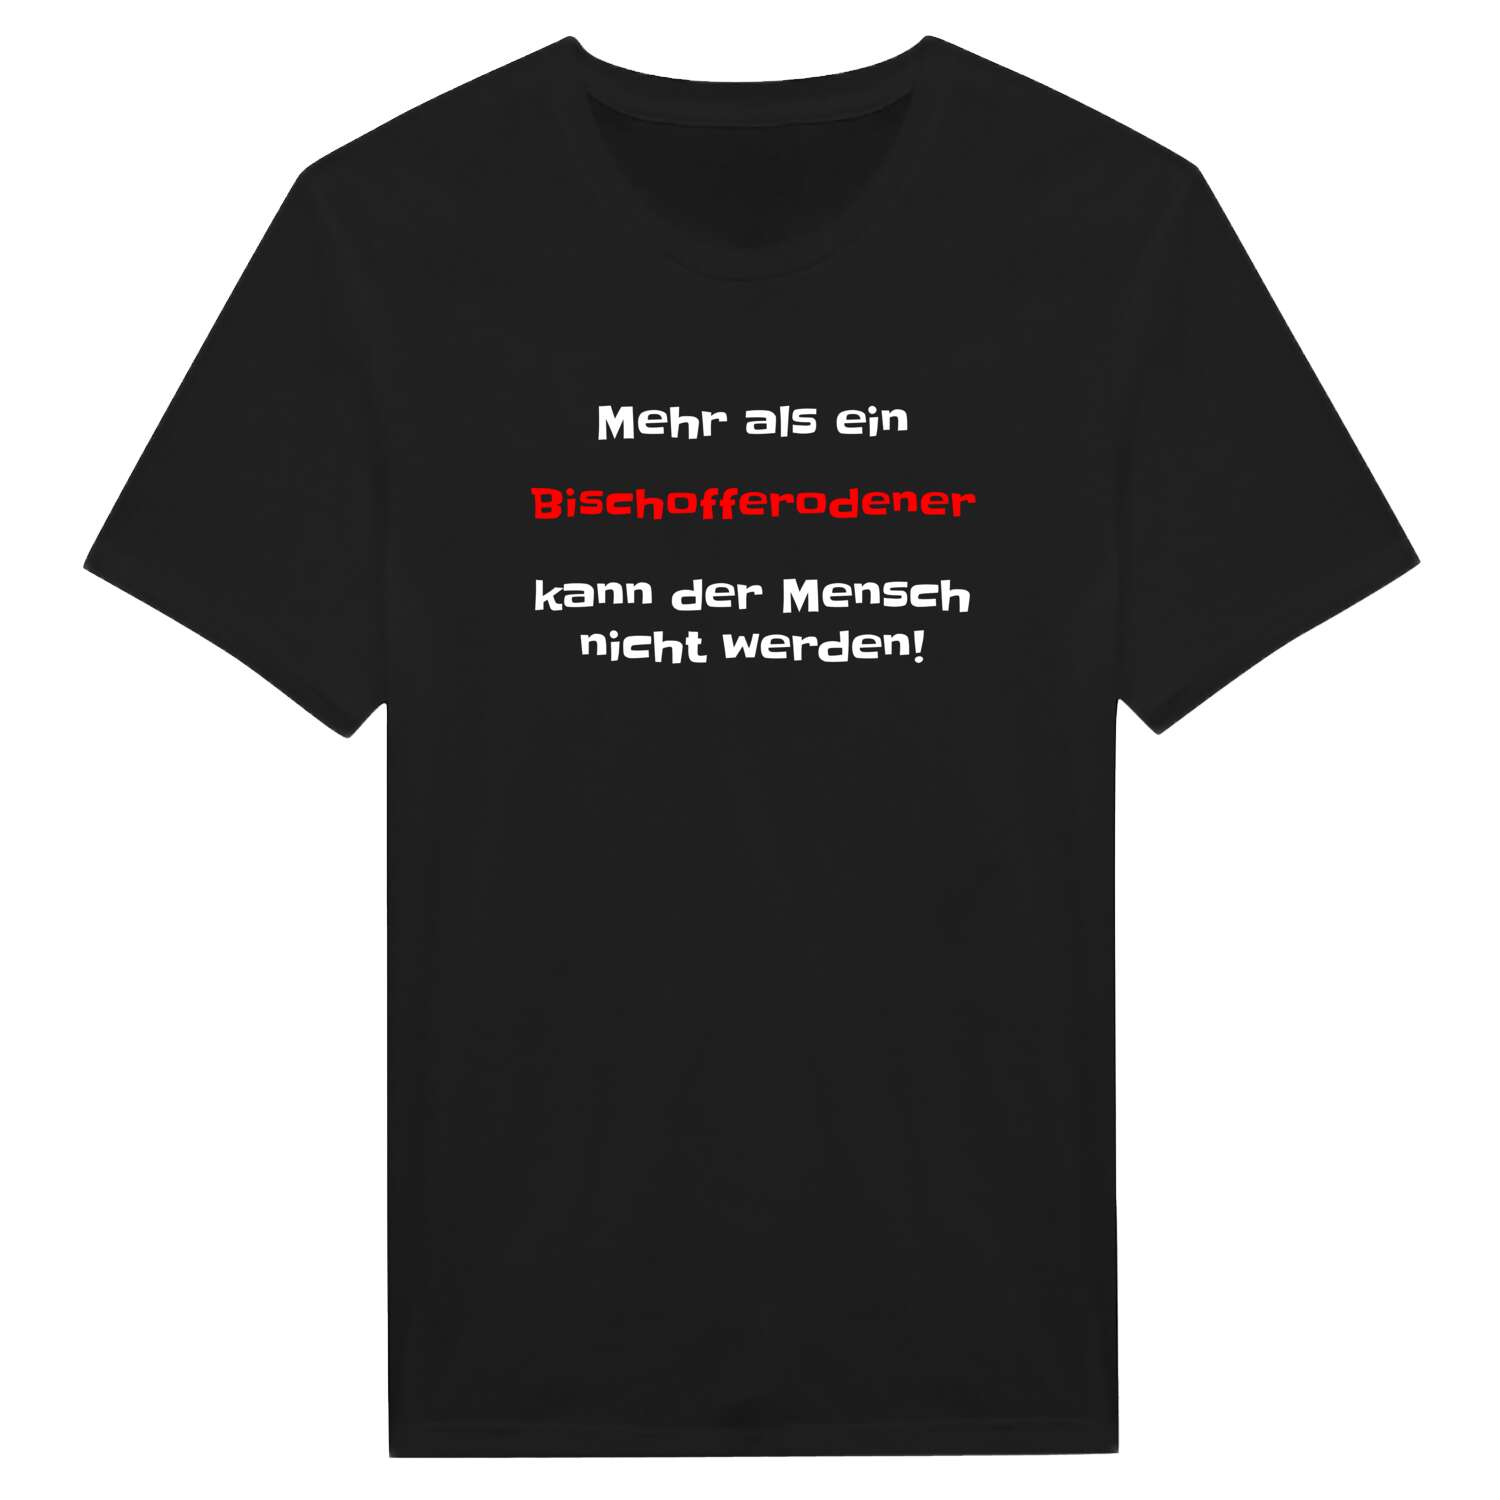 Bischofferode T-Shirt »Mehr als ein«